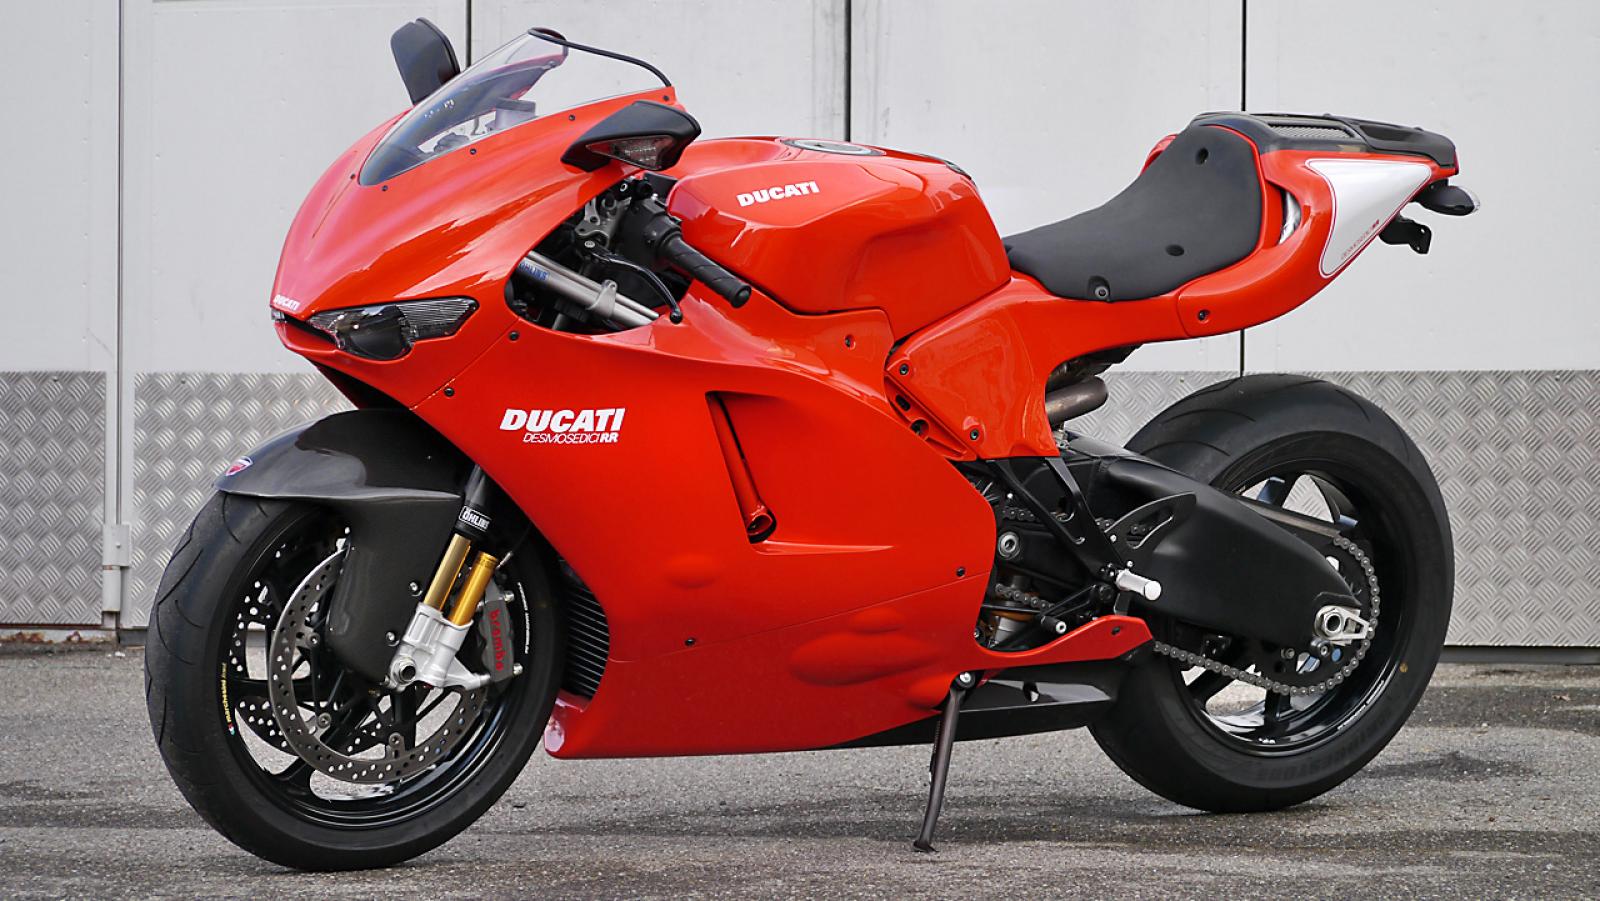 Ducati Ducati Desmosedici Rr Moto Zombdrive